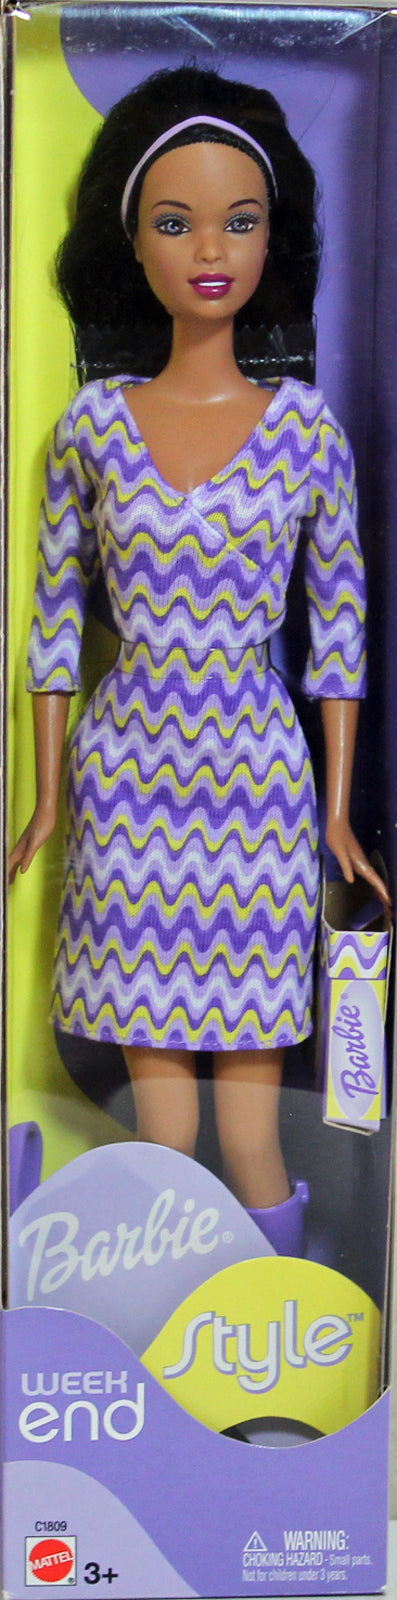 2002 Weekend Style Barbie (C1809) - African American